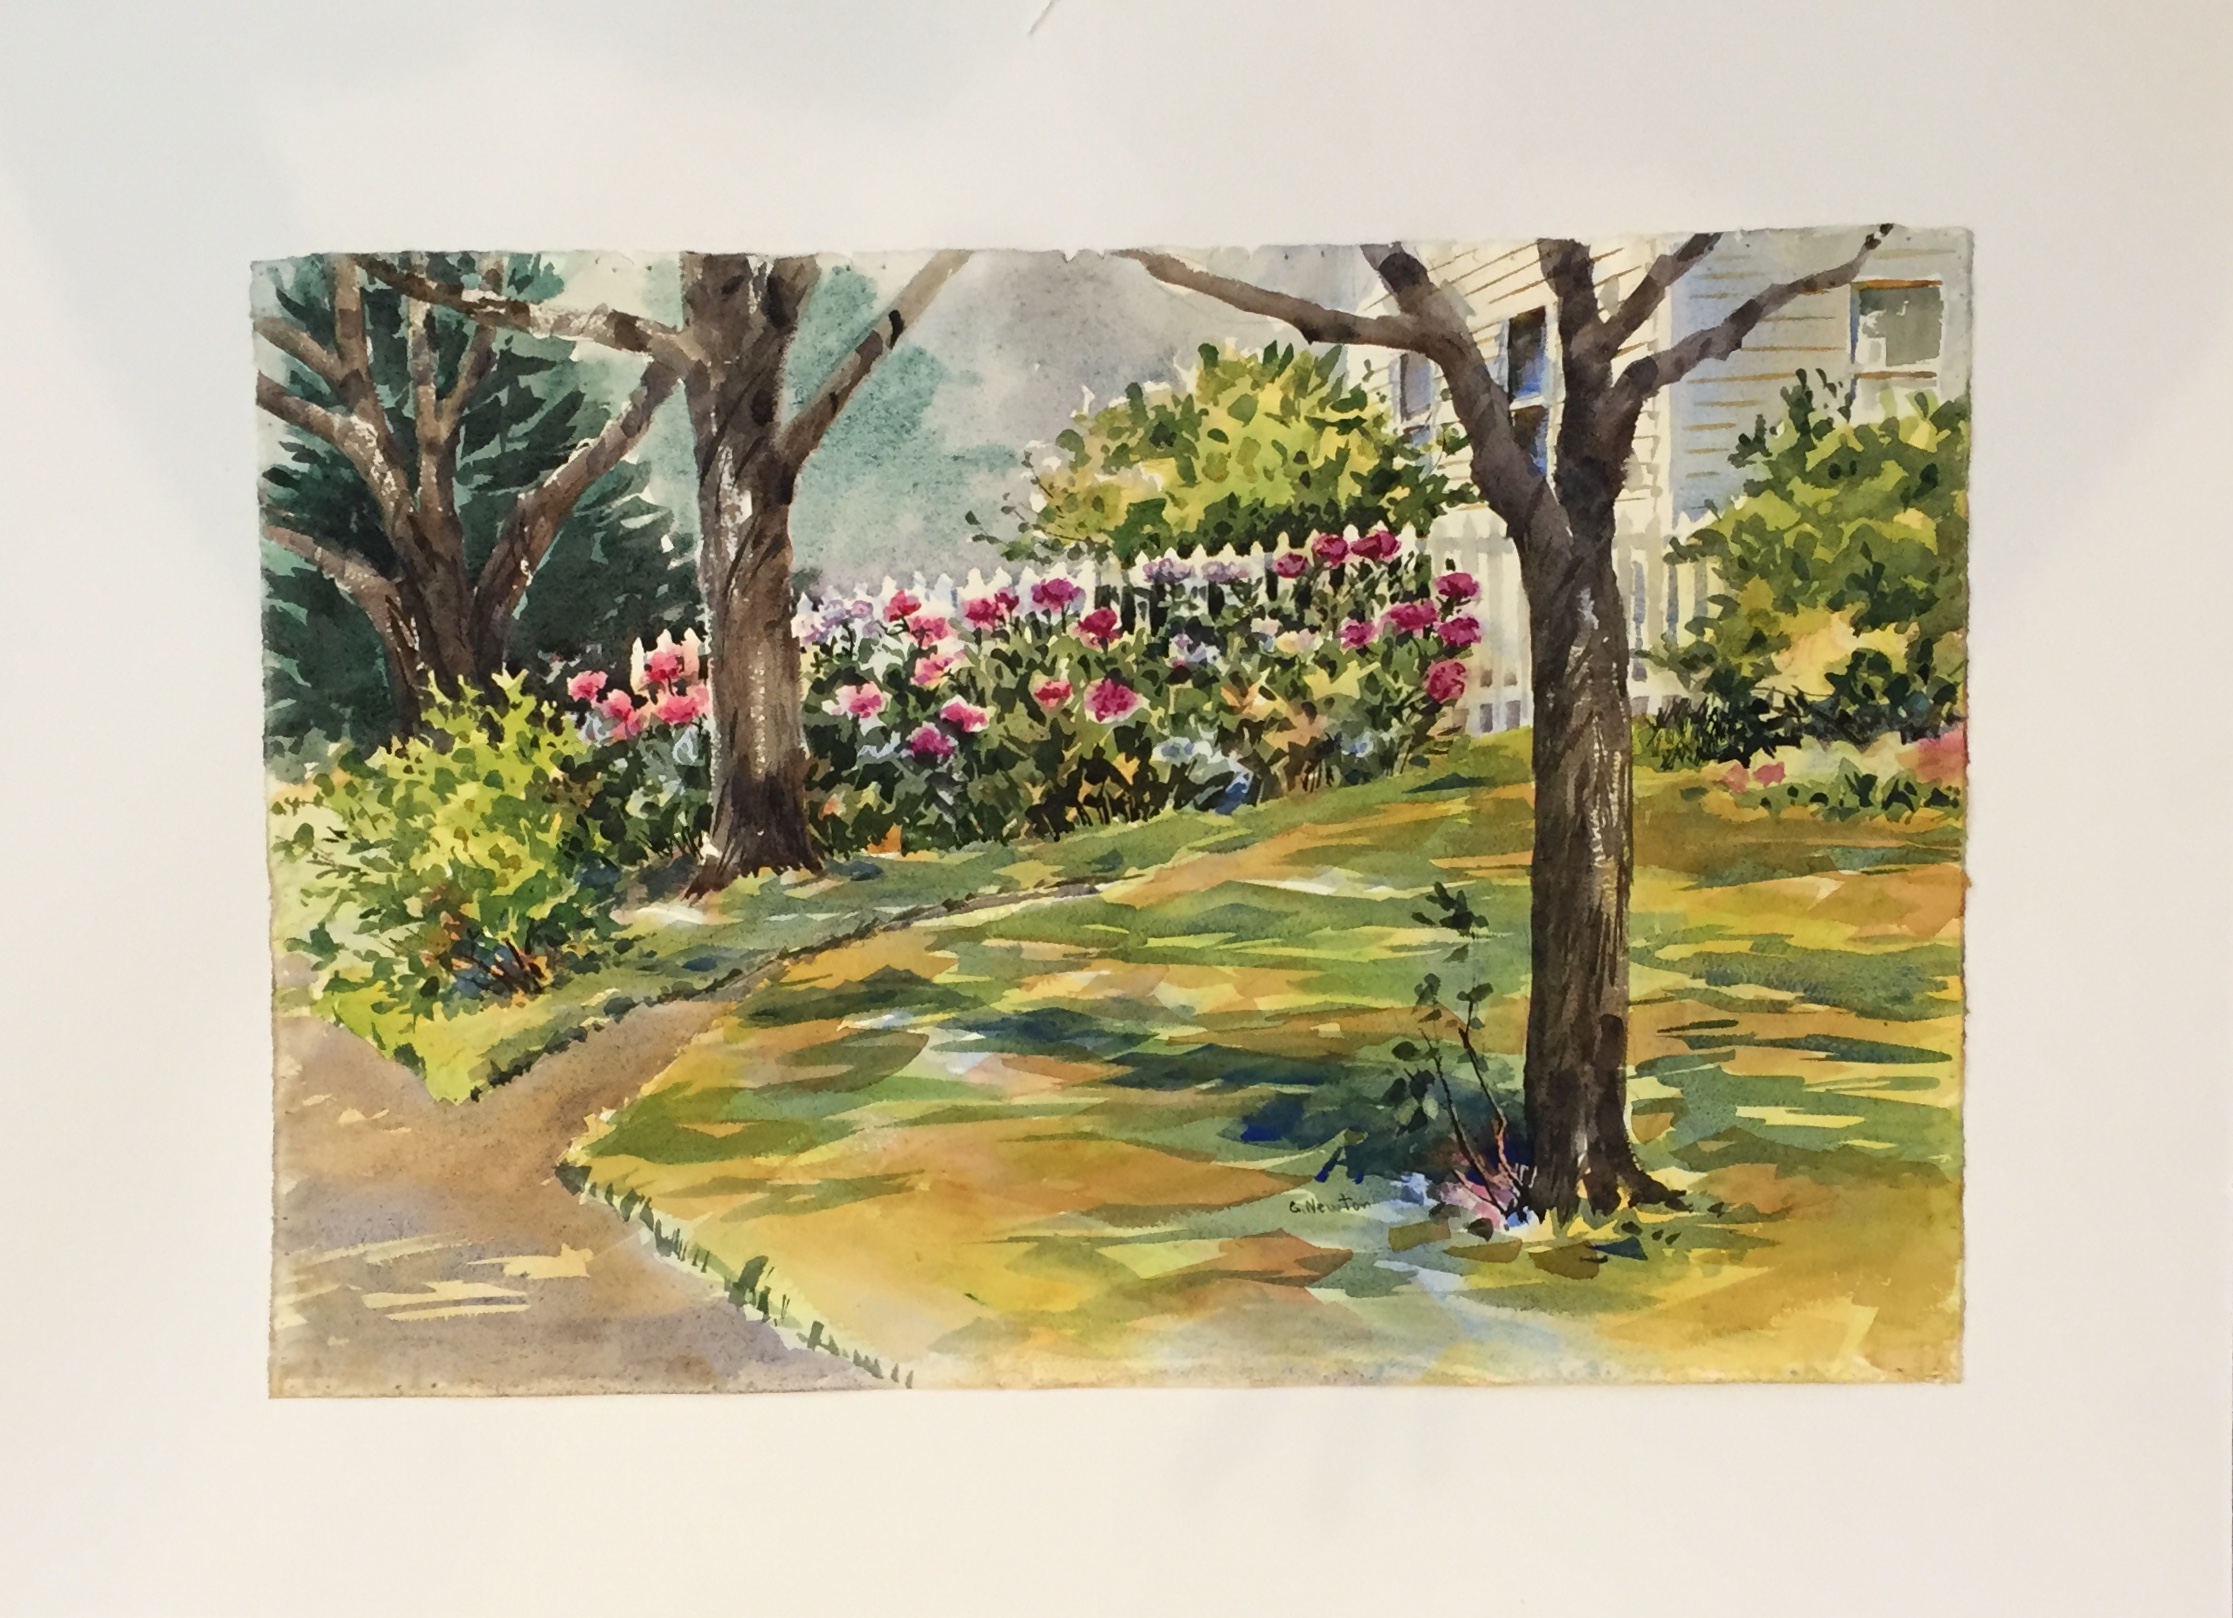 Georgia Newton
Garden
Watercolor
23" X 15"
$200. framed
